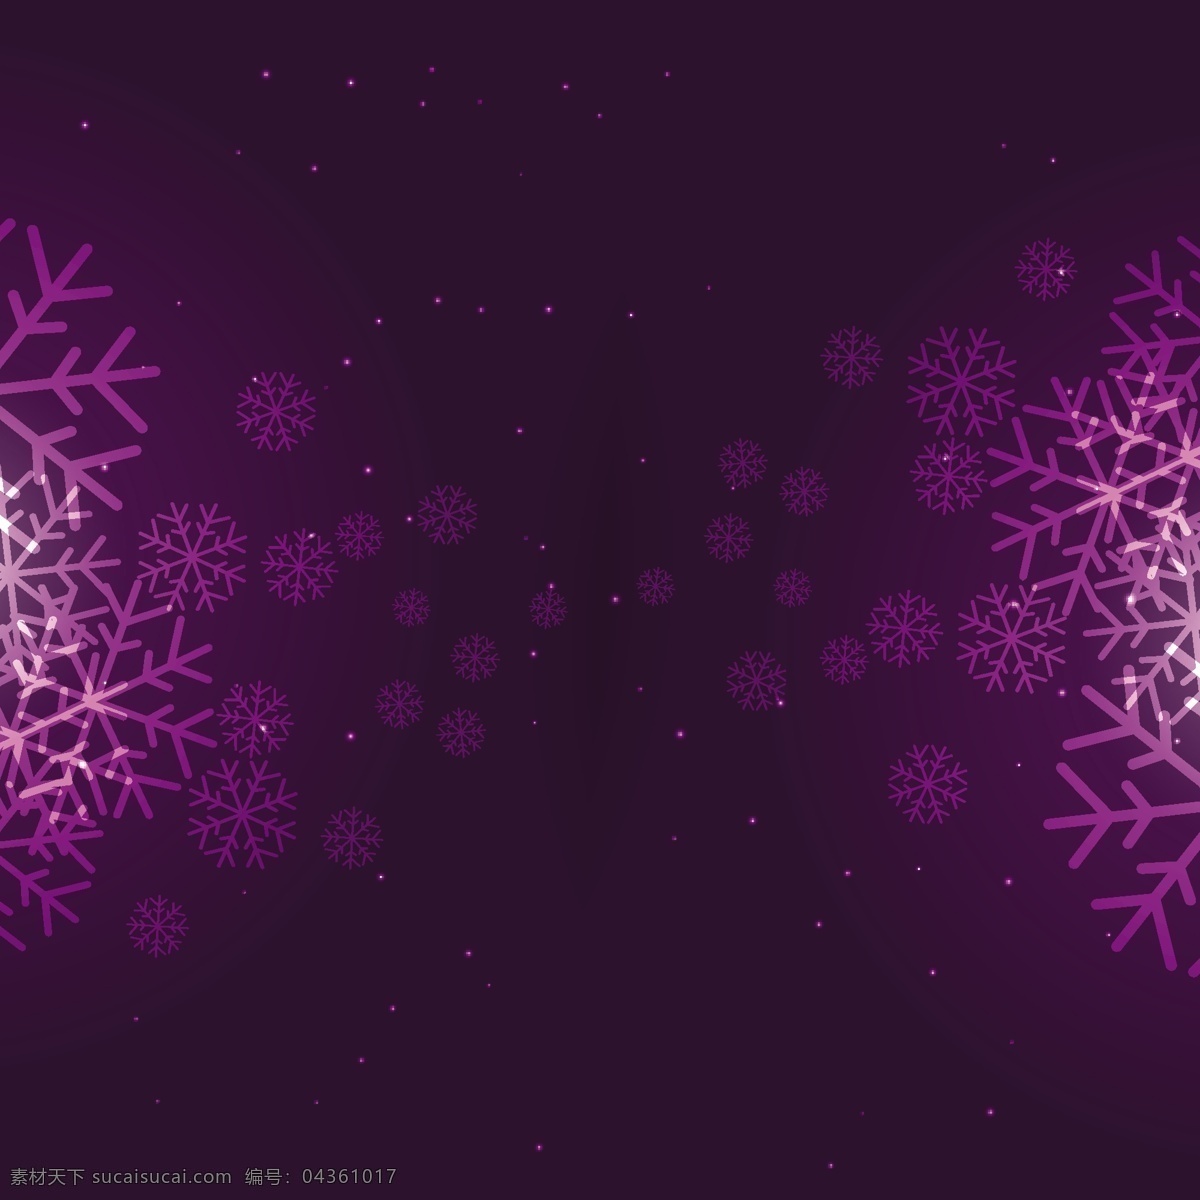 紫色雪花背景 背景 圣诞节 明星卡 几何 新的一年里 雪 冬天快乐 圣诞背景 圣诞卡 圣诞 节日 庆典 新 冰 雪花 紫色 闪烁 黑色